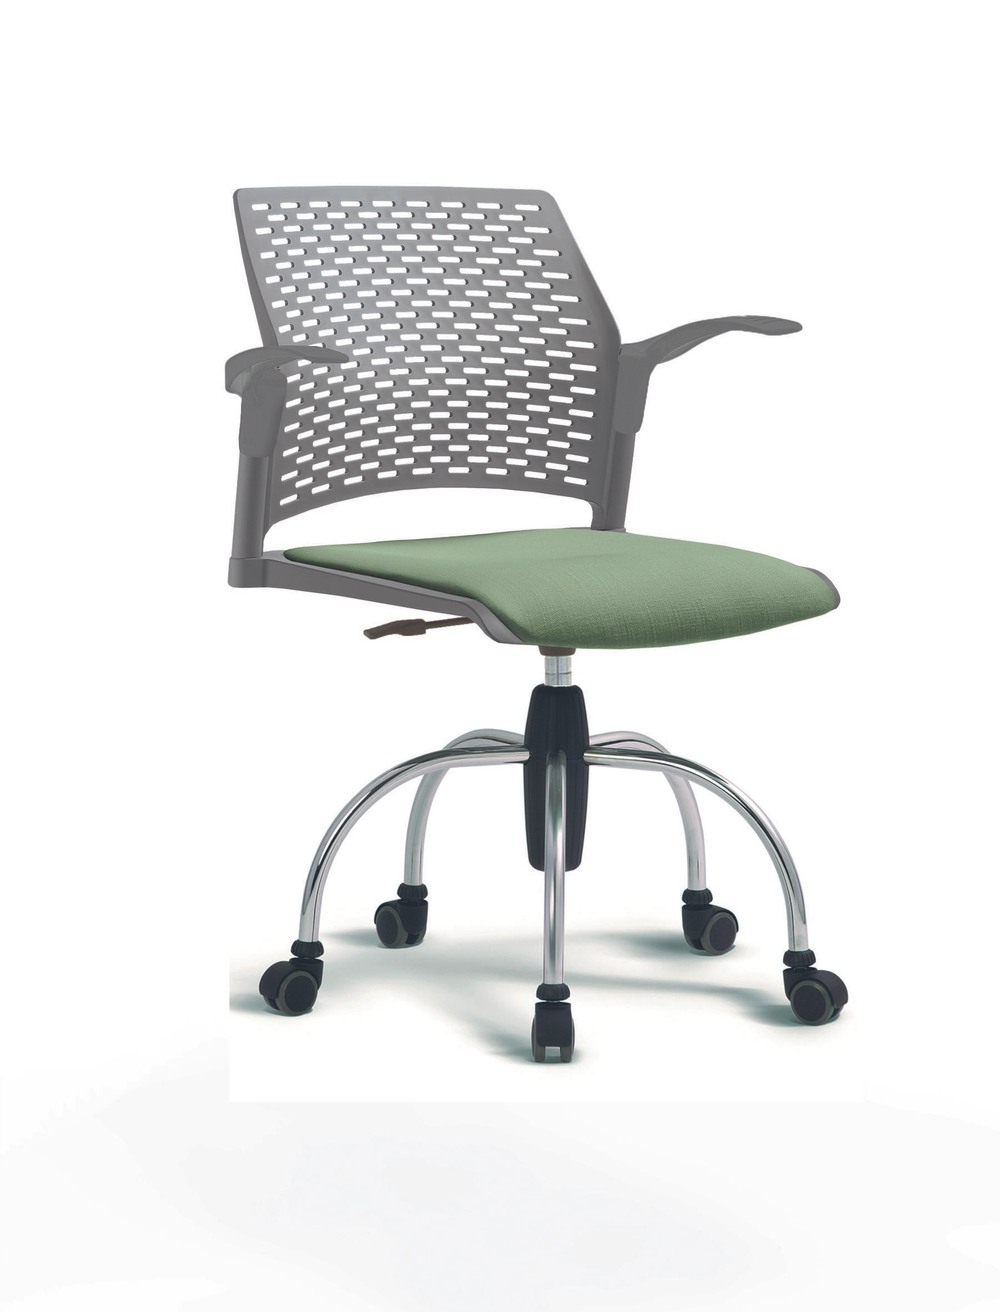 Кресло Rewind каркас хромированный, пластик серый, база паук хромированная, с открытыми подлокотниками, сиденье бледно-зеленое